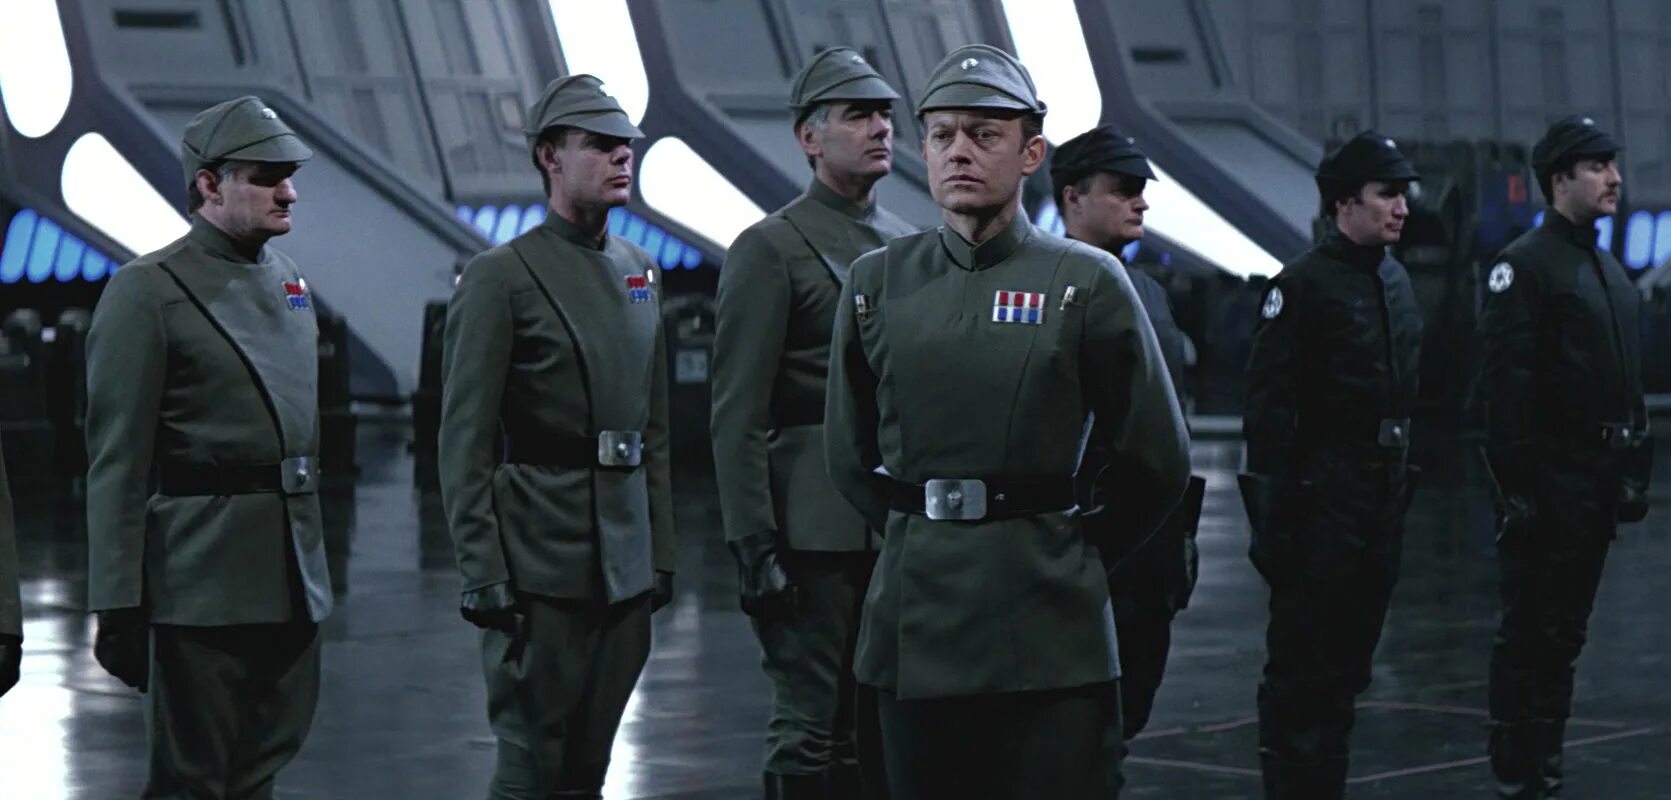 Форма будущих звезд. Офицер империи Звездные войны. Star Wars Имперский офицер. Офицеры империи Star Wars. Имперский генерал Звездные войны.